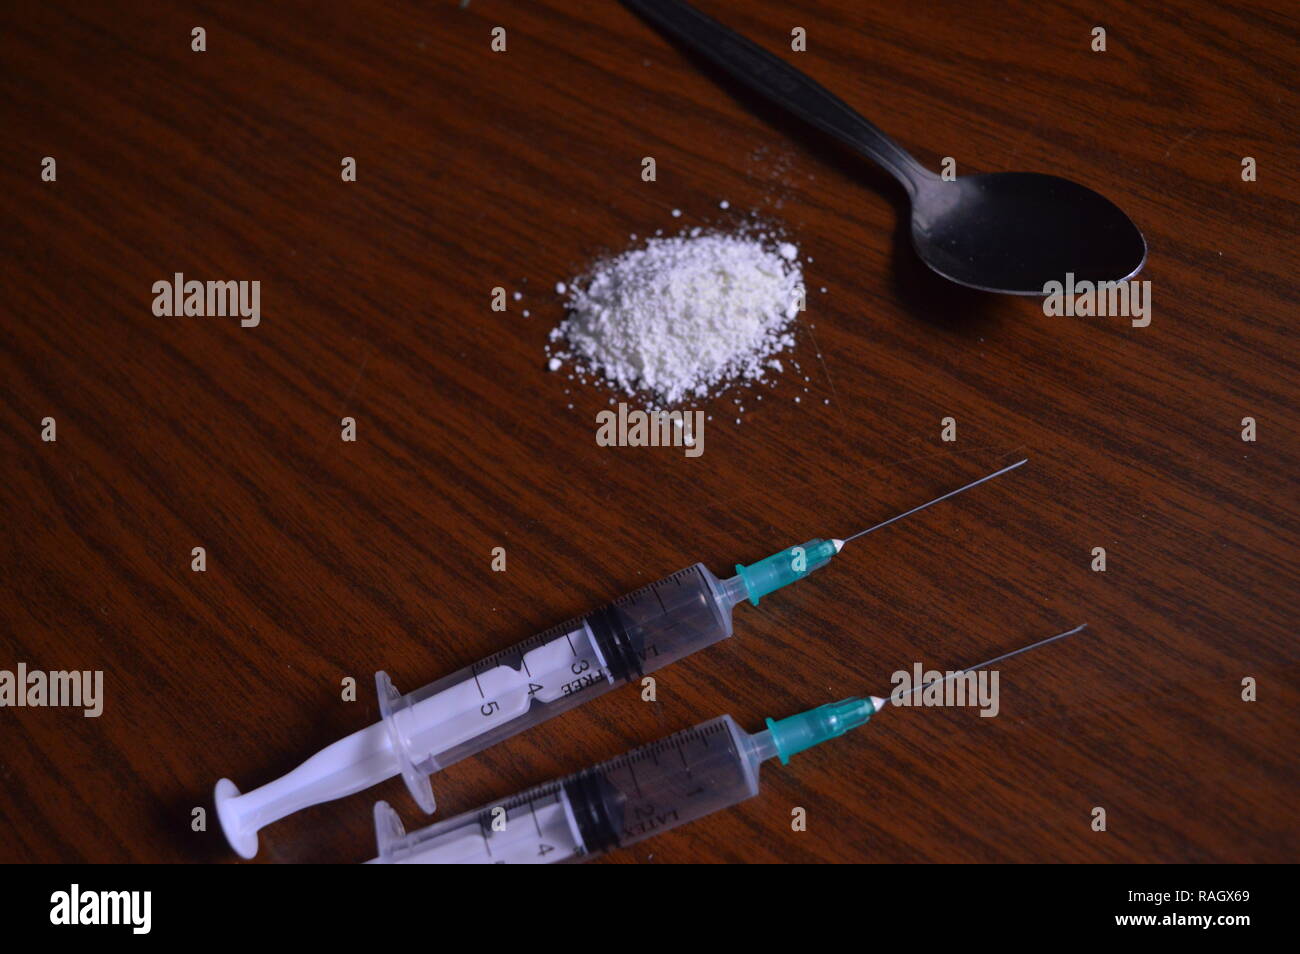 Narcotici essendo preparato. Aghi, cucchiaio e polvere bianca su una tabella. Foto Stock